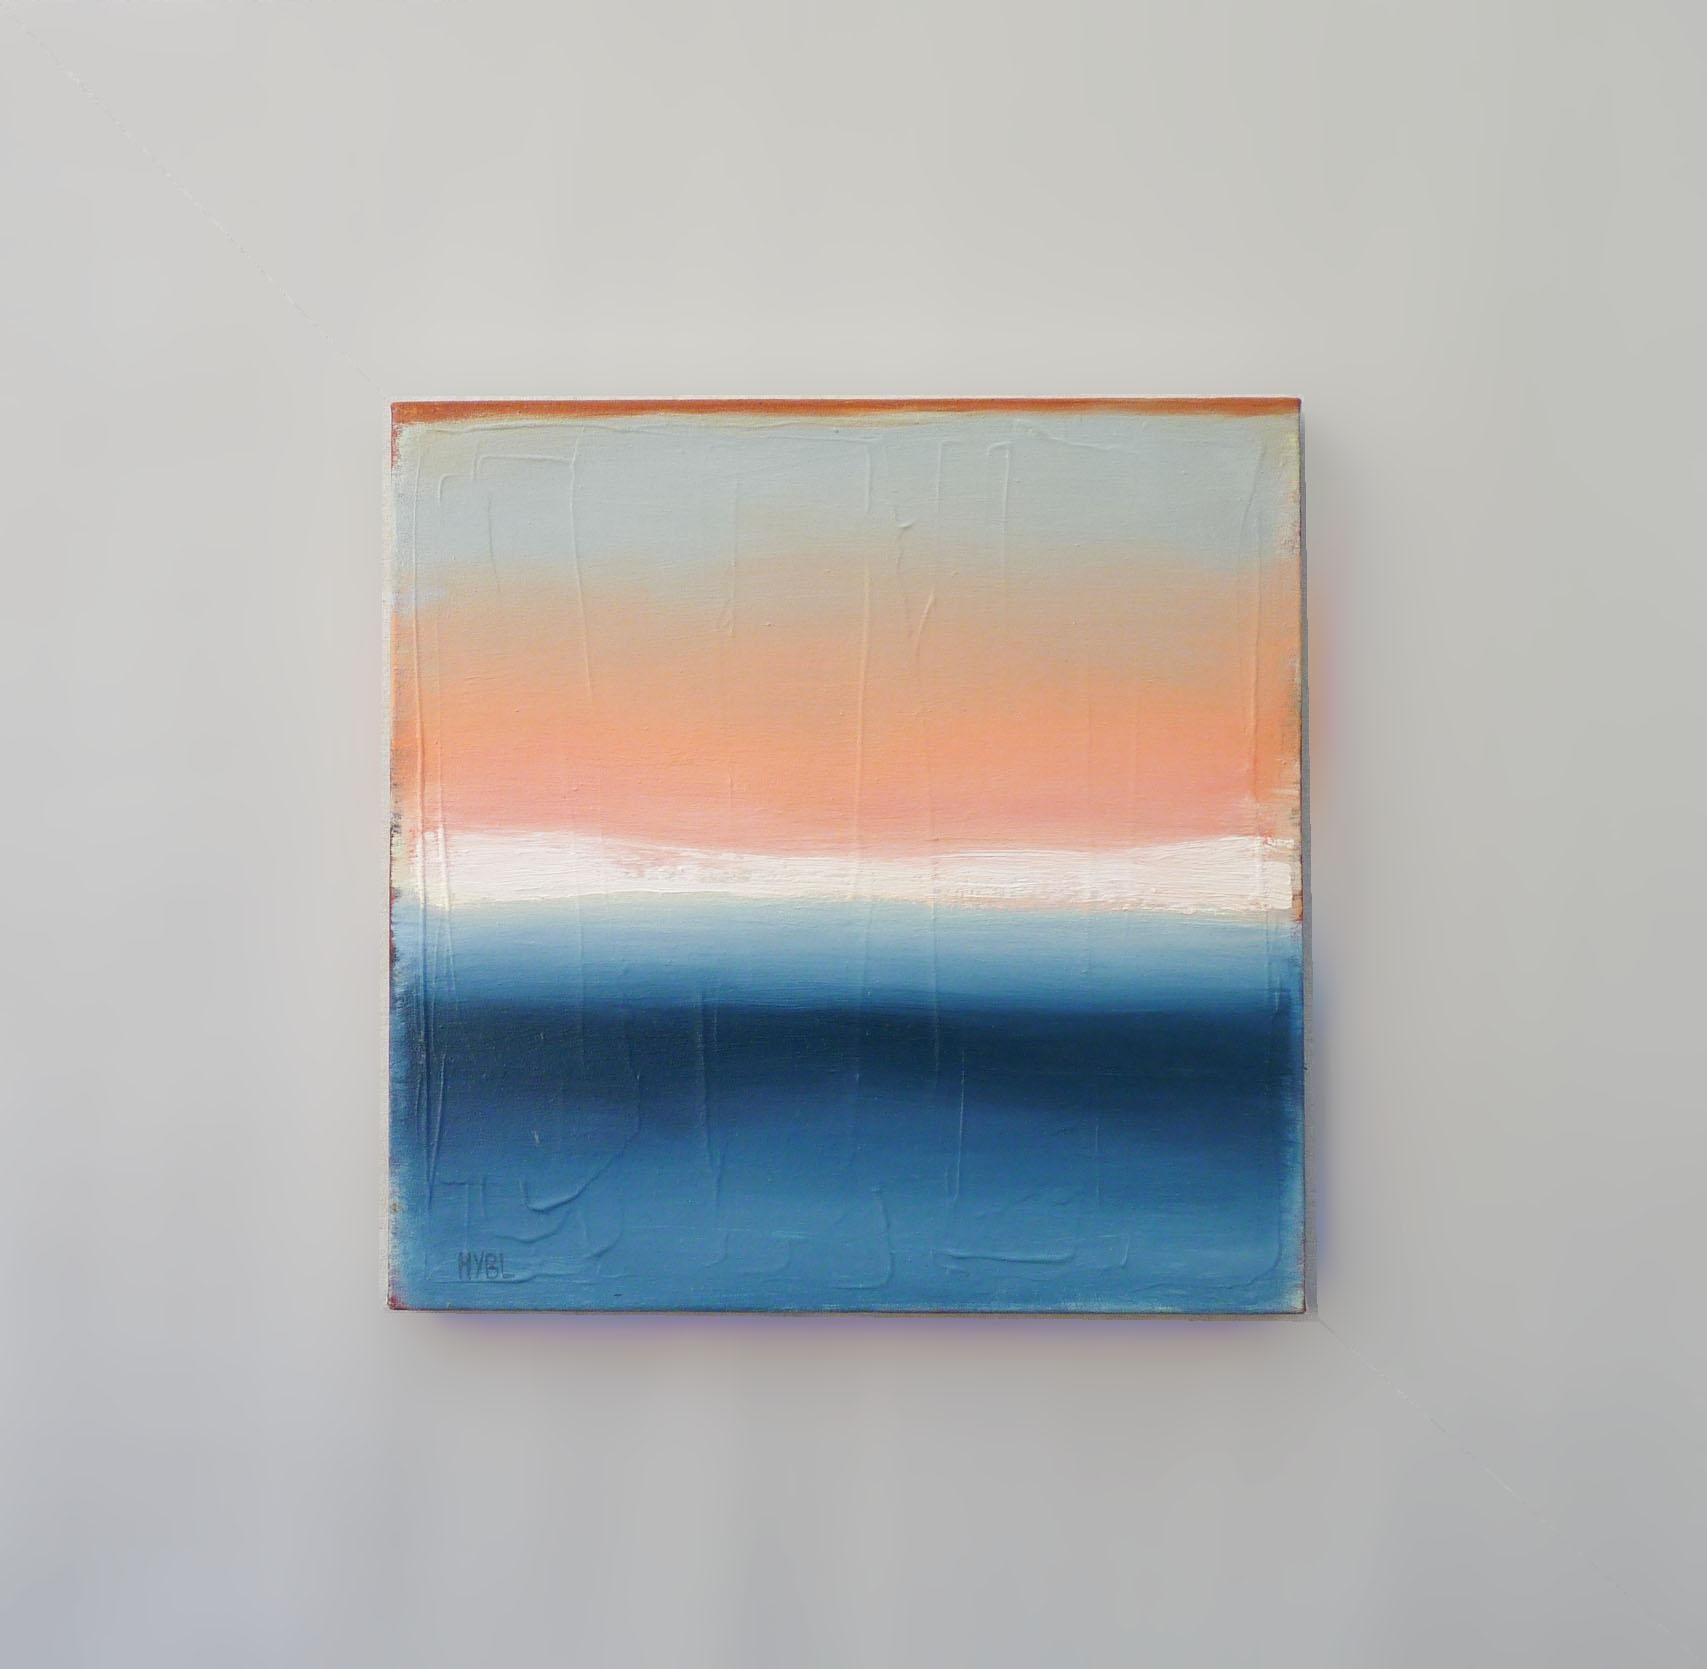 <p>Kommentare der Künstlerin<br>Die Künstlerin Heidi Hybl porträtiert eine abstrakte Meereslandschaft, in der der orangefarbene Himmel, der weiche weiße Nebel und der ruhige blaue Ozean nahtlos in eine verträumte Komposition übergehen. 